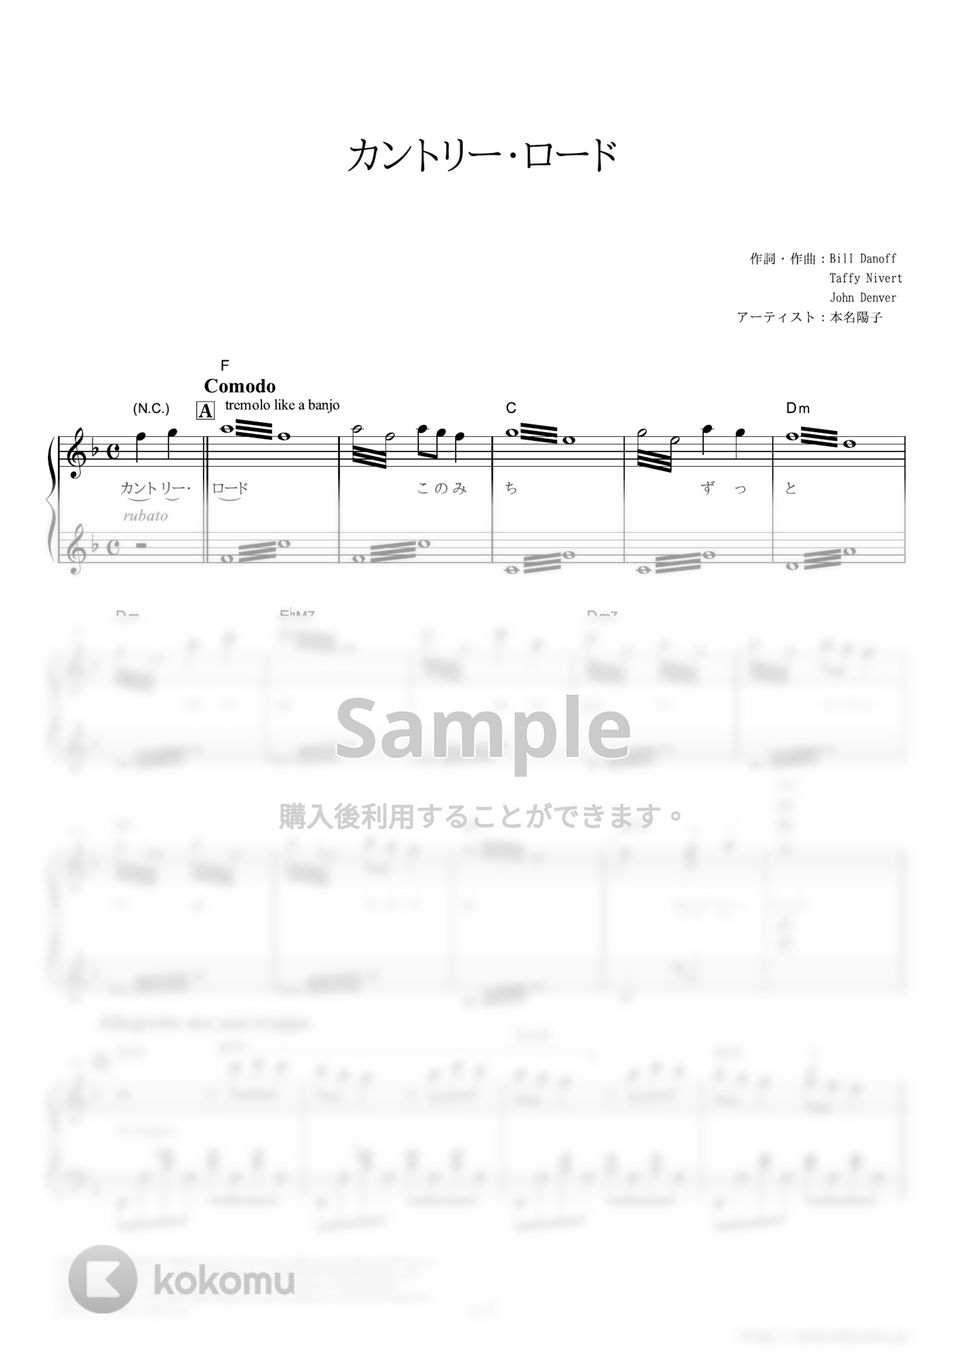 本名陽子 - カントリー・ロード (映画『耳をすませば』主題歌) by ピアノの本棚